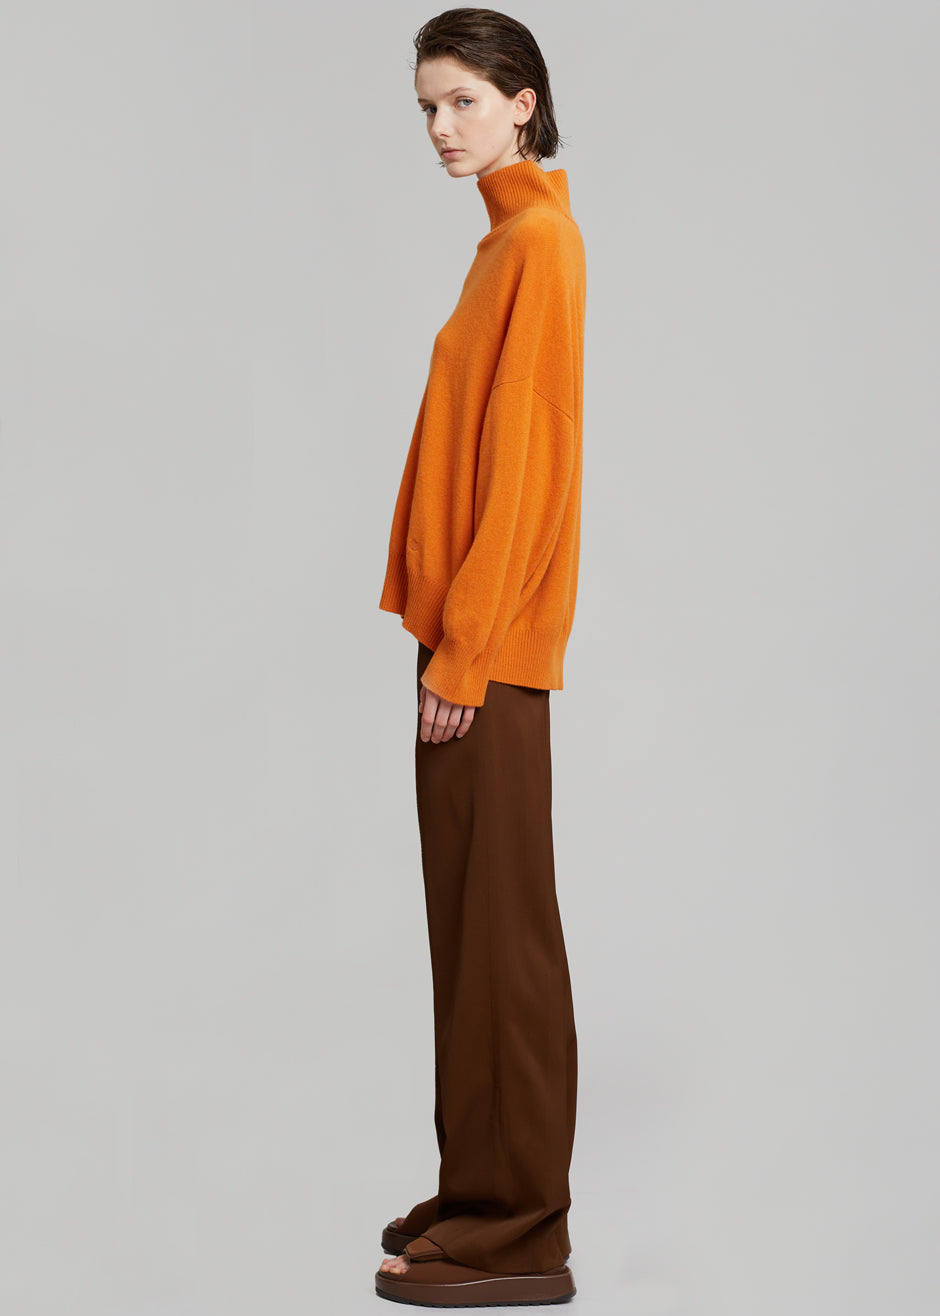 Loulou Studio Murano Cashmere Sweater - Orange - 6